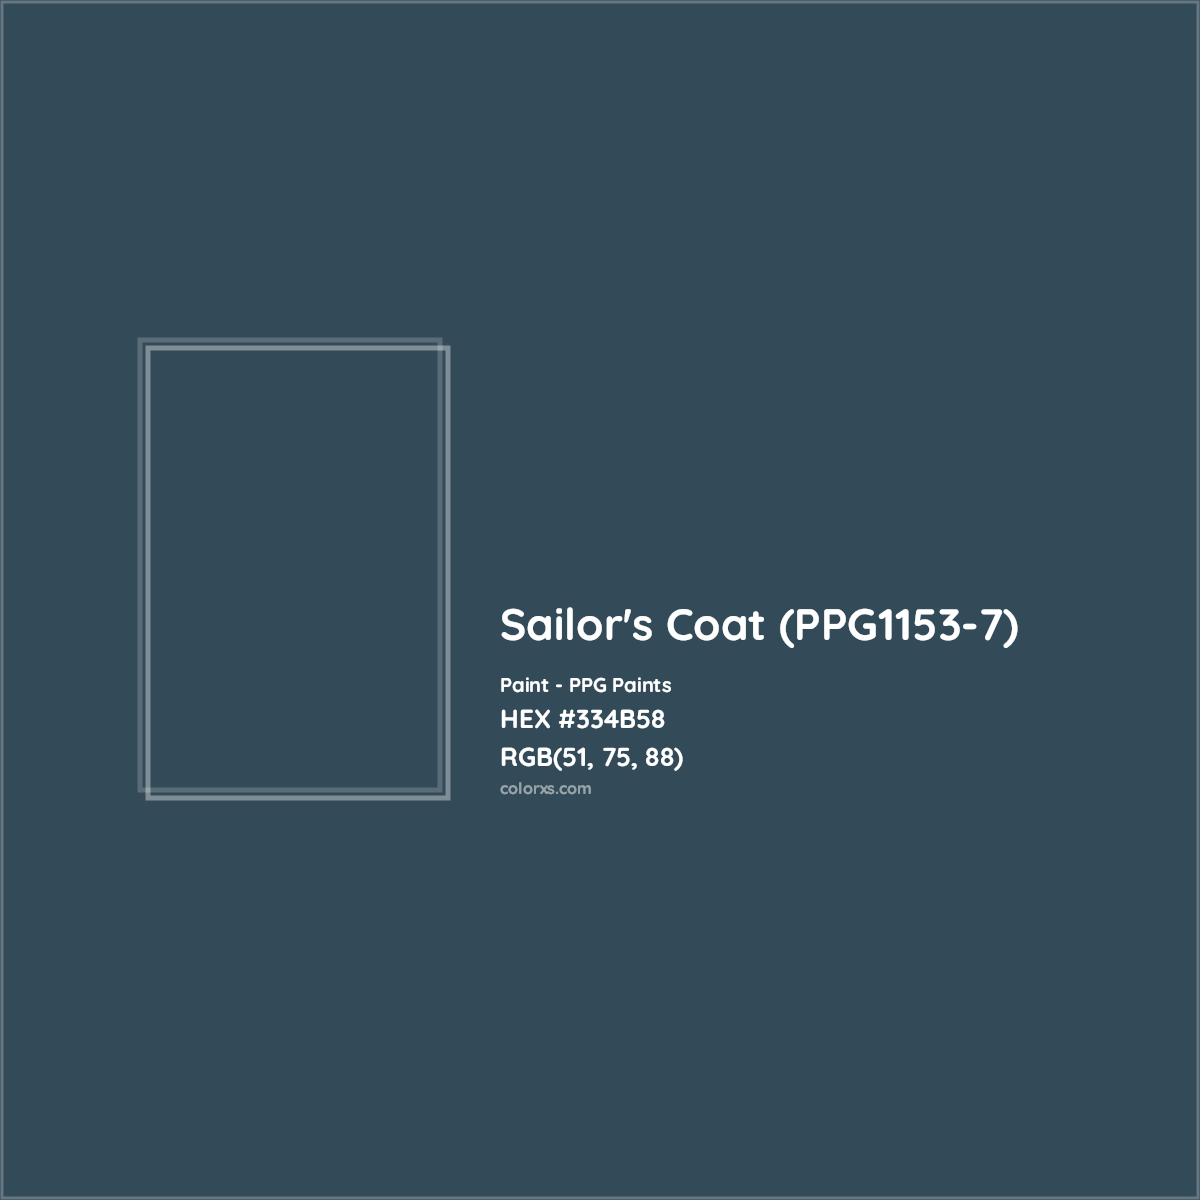 HEX #334B58 Sailor's Coat (PPG1153-7) Paint PPG Paints - Color Code